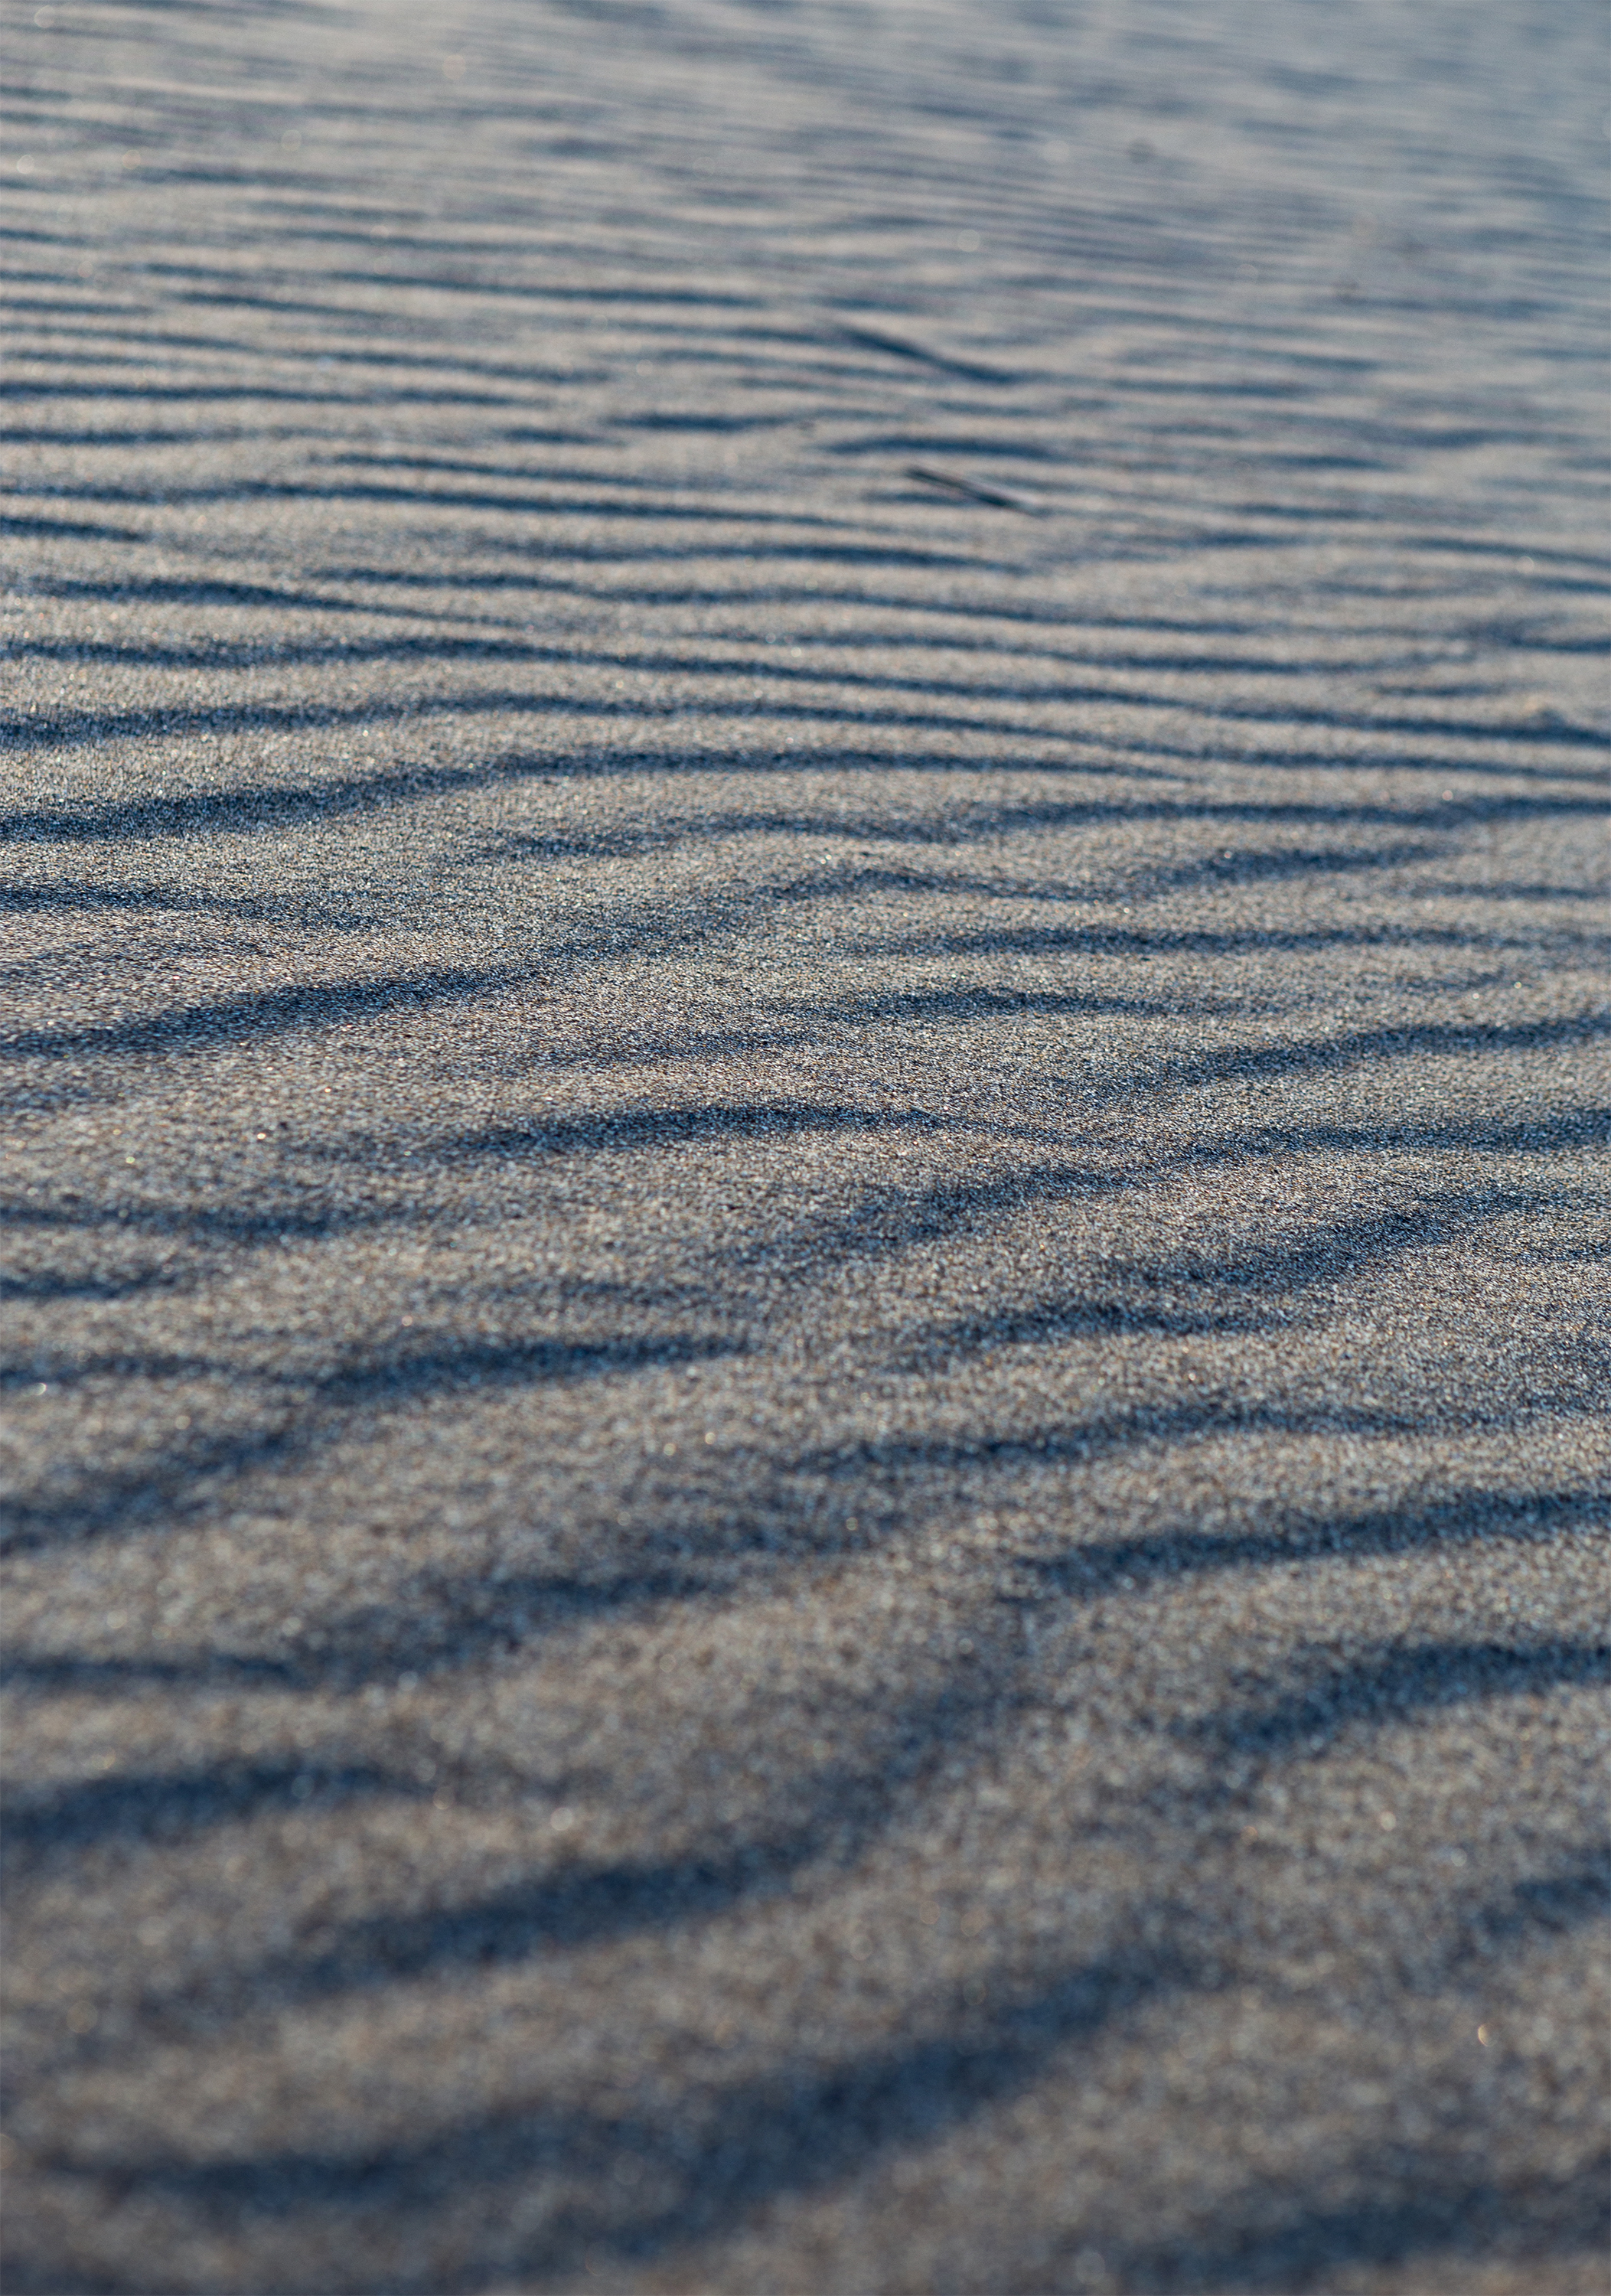 砂浜 砂丘のテクスチャー 無料の高画質フリー写真素材 イメージズラボ